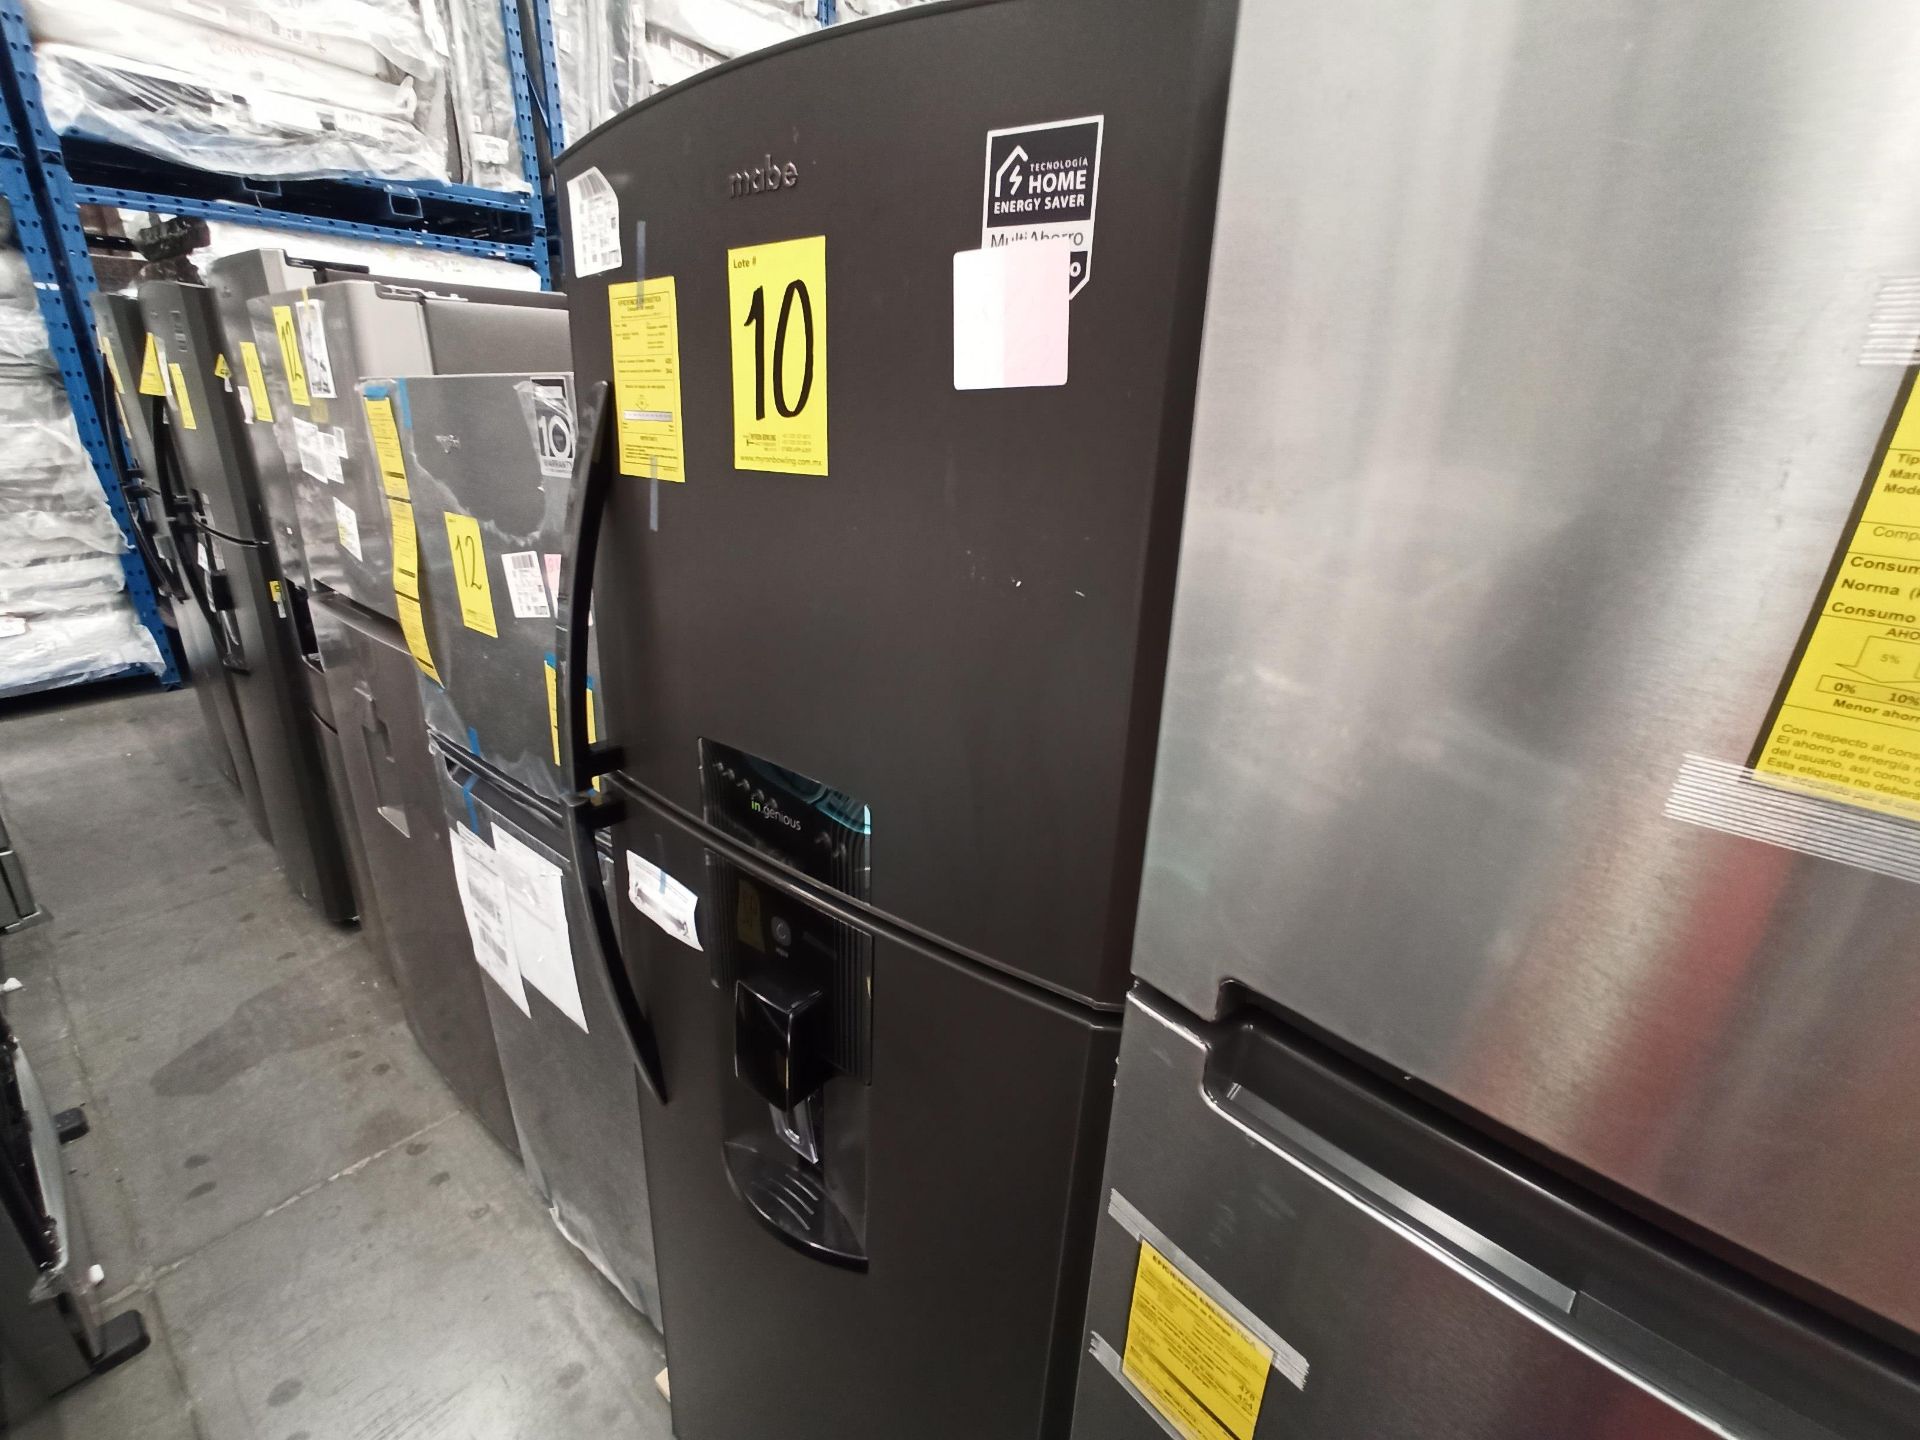 Lote de 2 refrigeradores contiene: 1 Refrigerador Marca WHIRLPOOL, Modelo WT1818A, Serie 878989, Co - Image 12 of 16